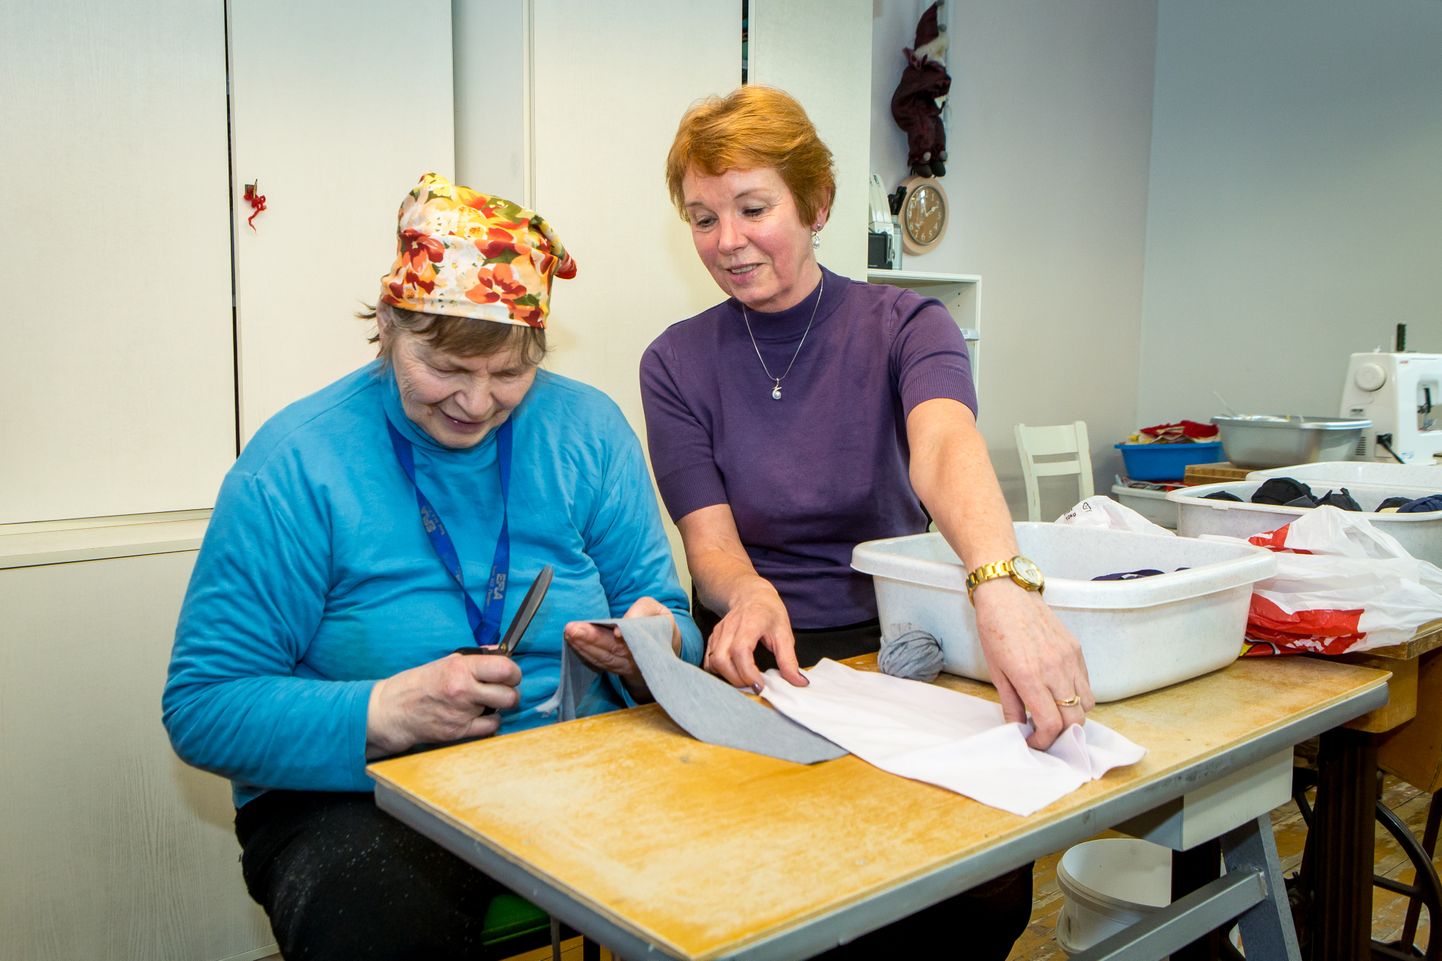 TEGEVUSES: Terje Hanson (paremal) juhendab parasjagu käsitöö tegemisel Silvi Salongi.
MAANUS MASING